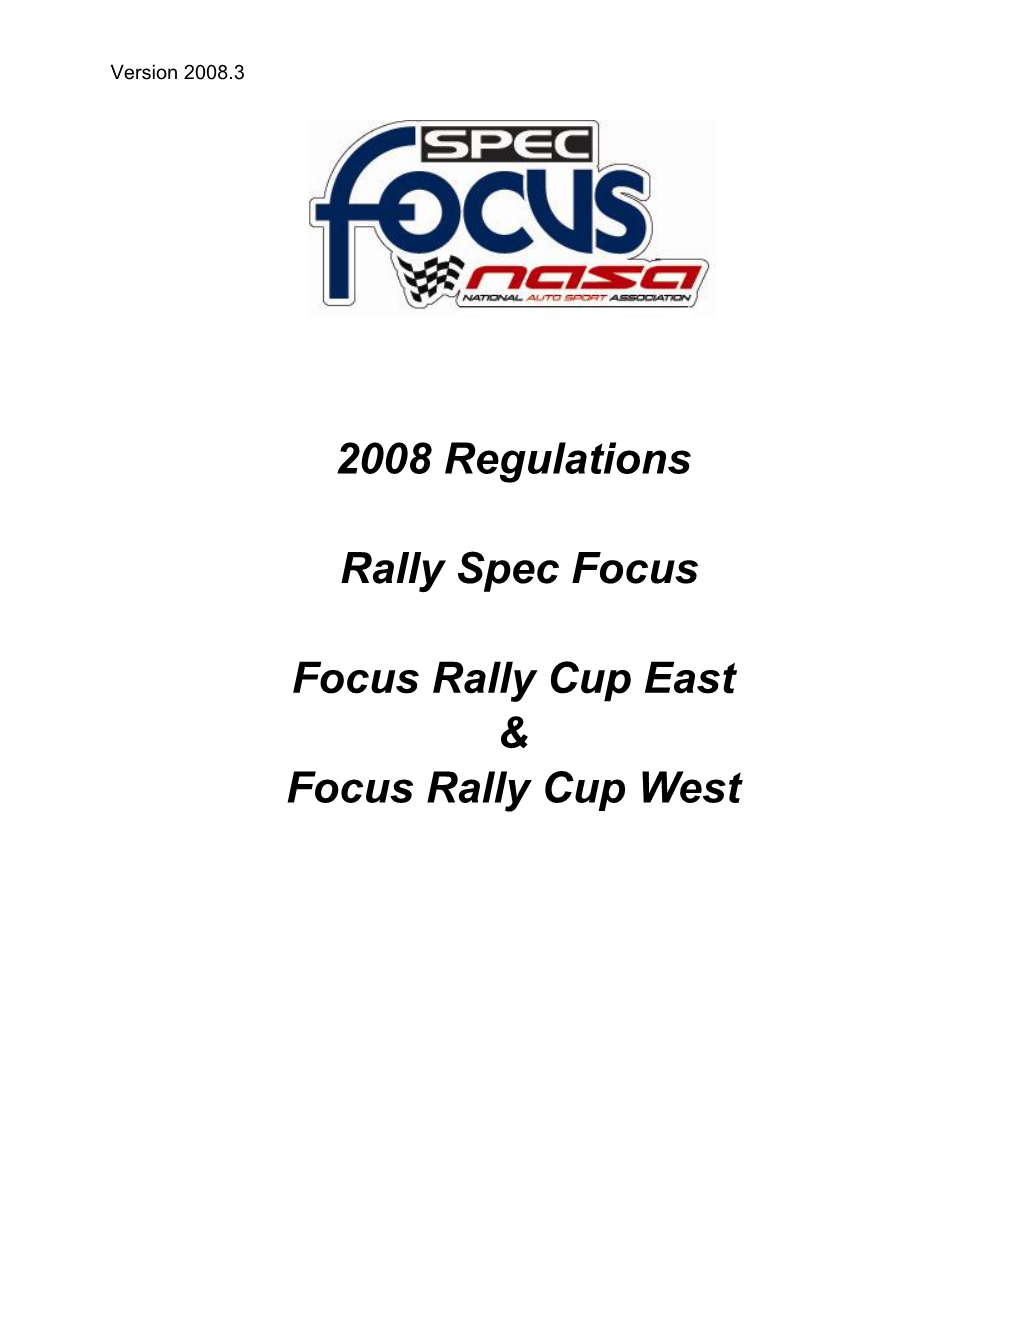 2006 Regulations for NASA Rally Sport